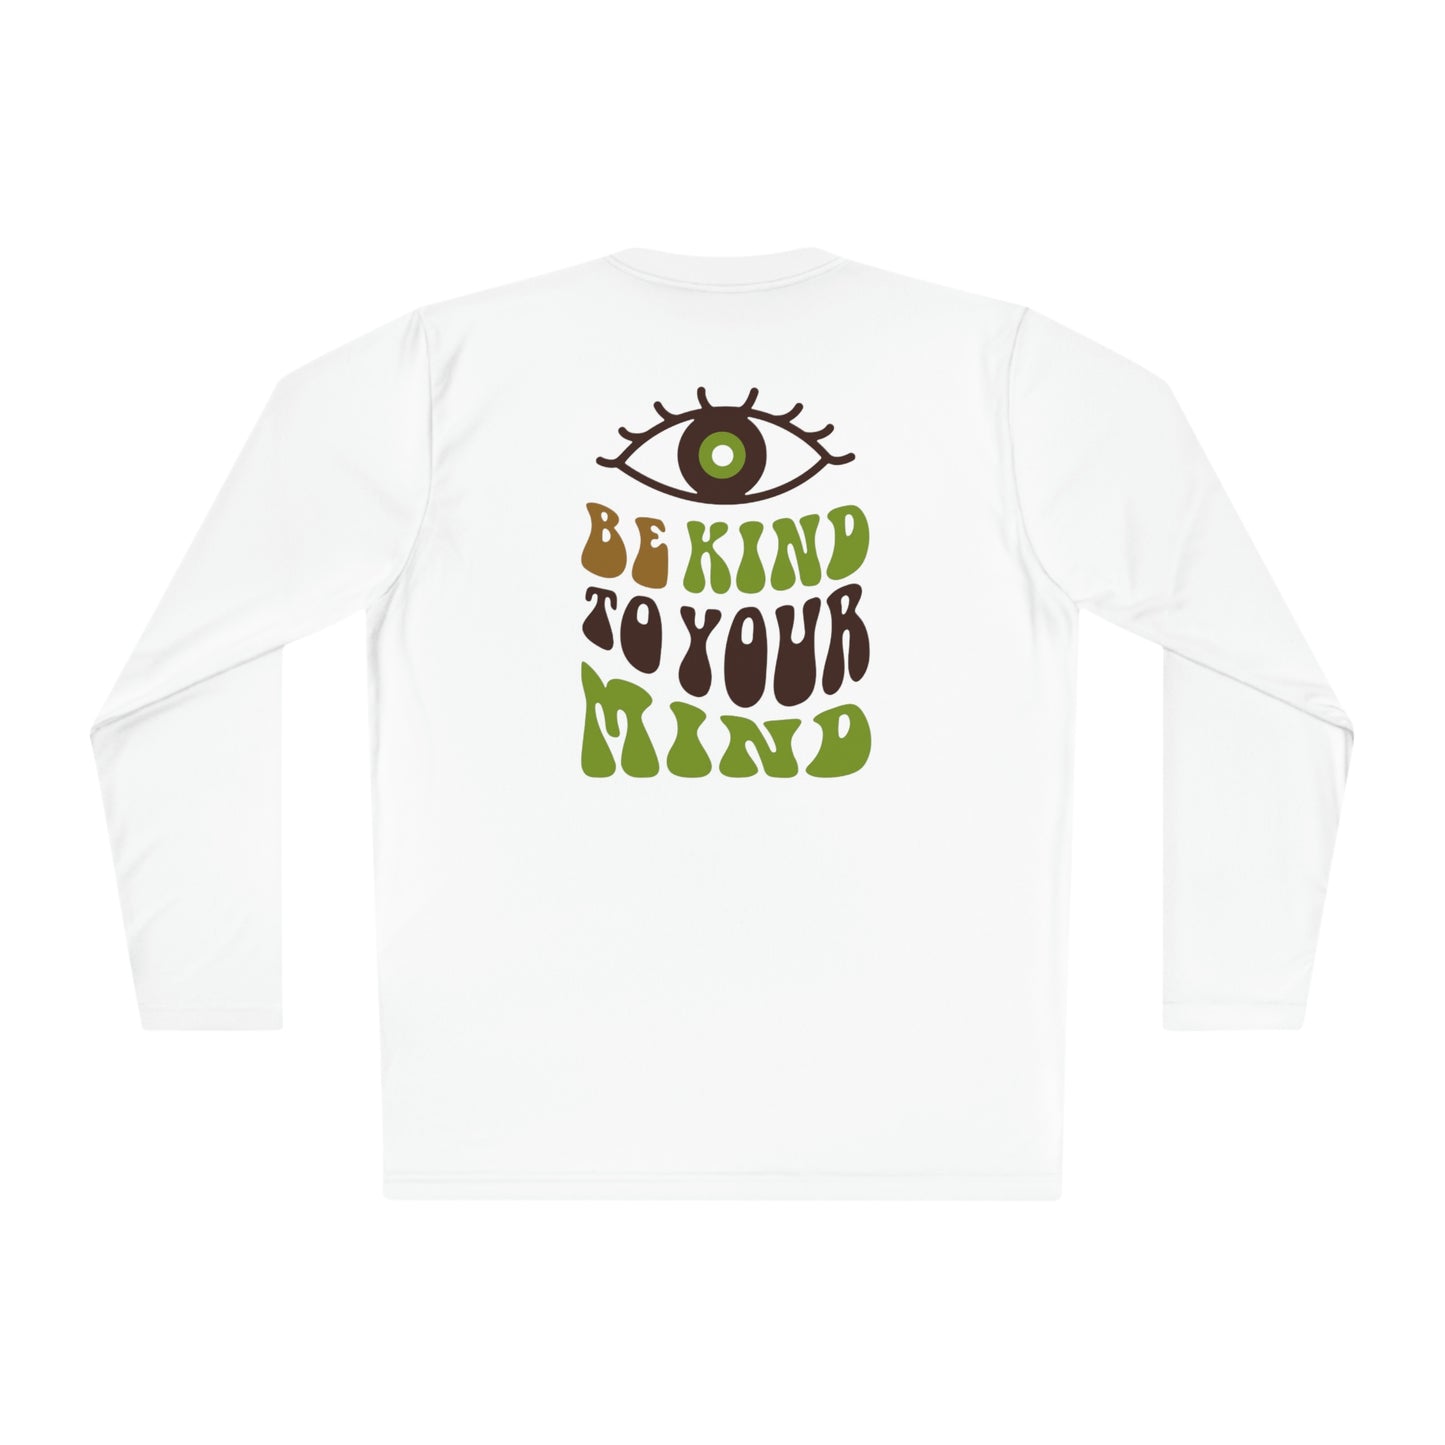 Camiseta de manga larga ligera unisex con estampado "Be kind to your mind" en la parte delantera y trasera